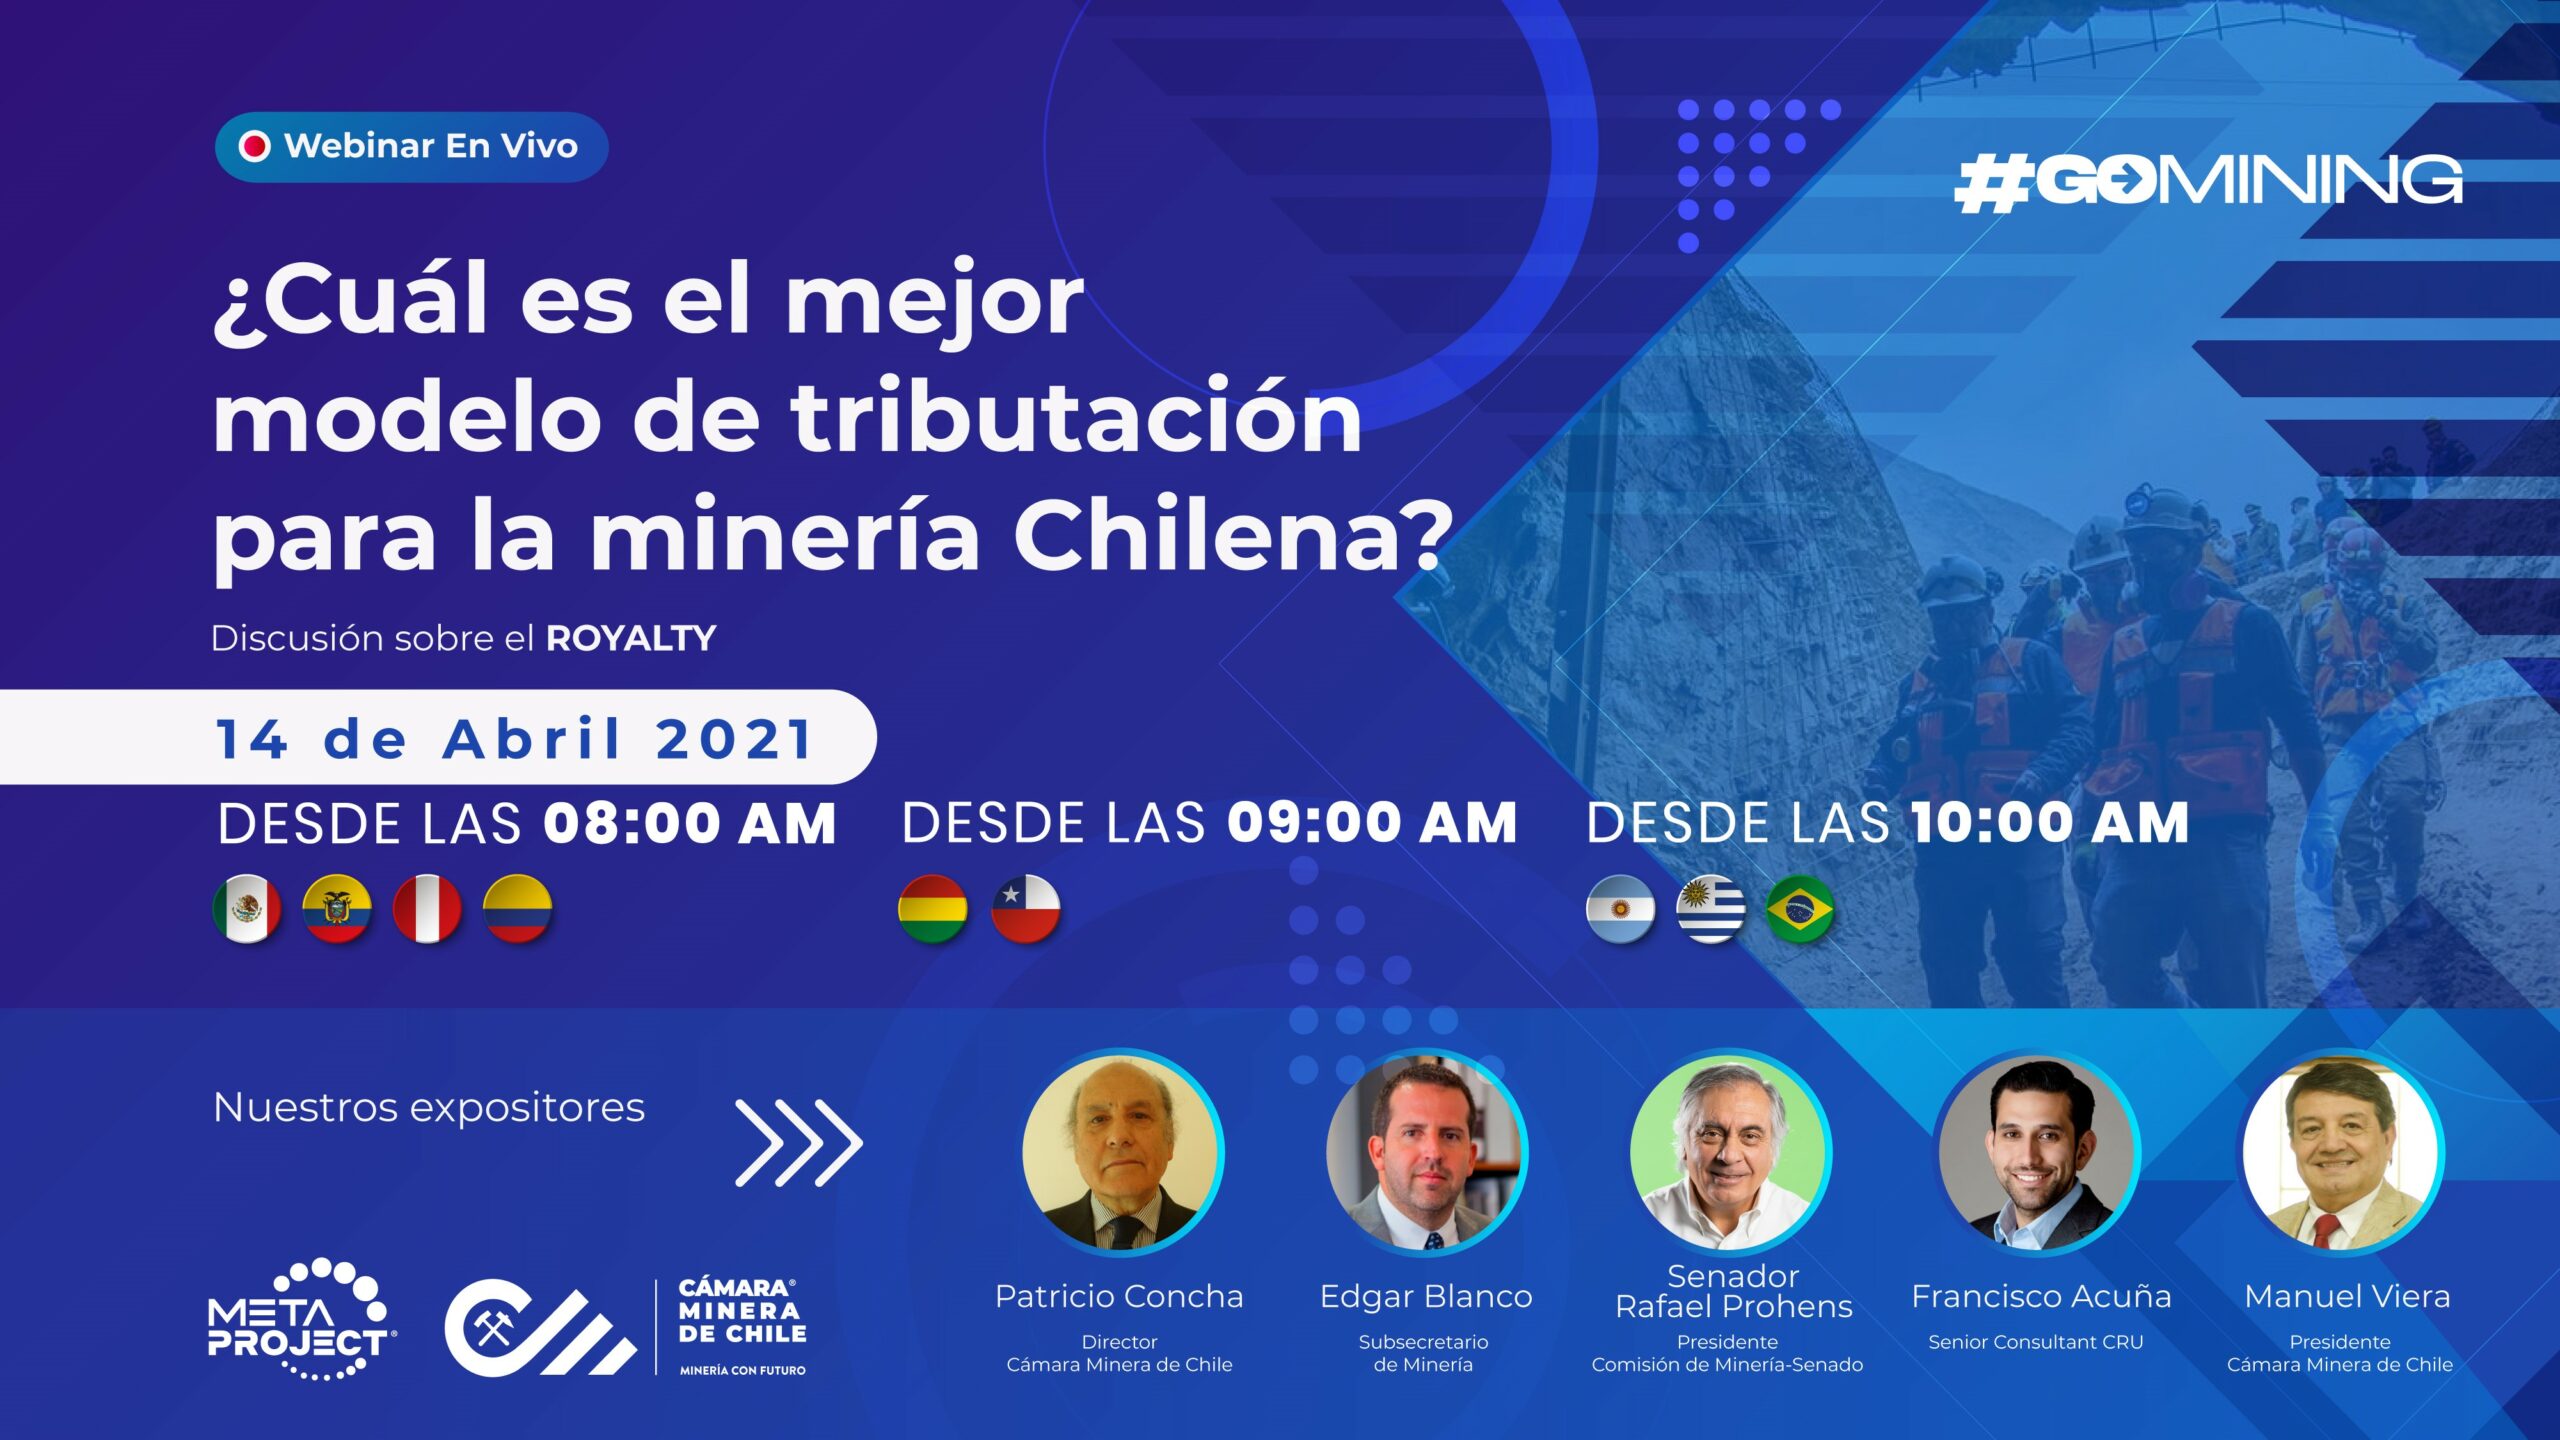 Cámara Minera de Chile realizará webinar: “¿Cuál es el mejor modelo de tributación para la minería Chilena?”